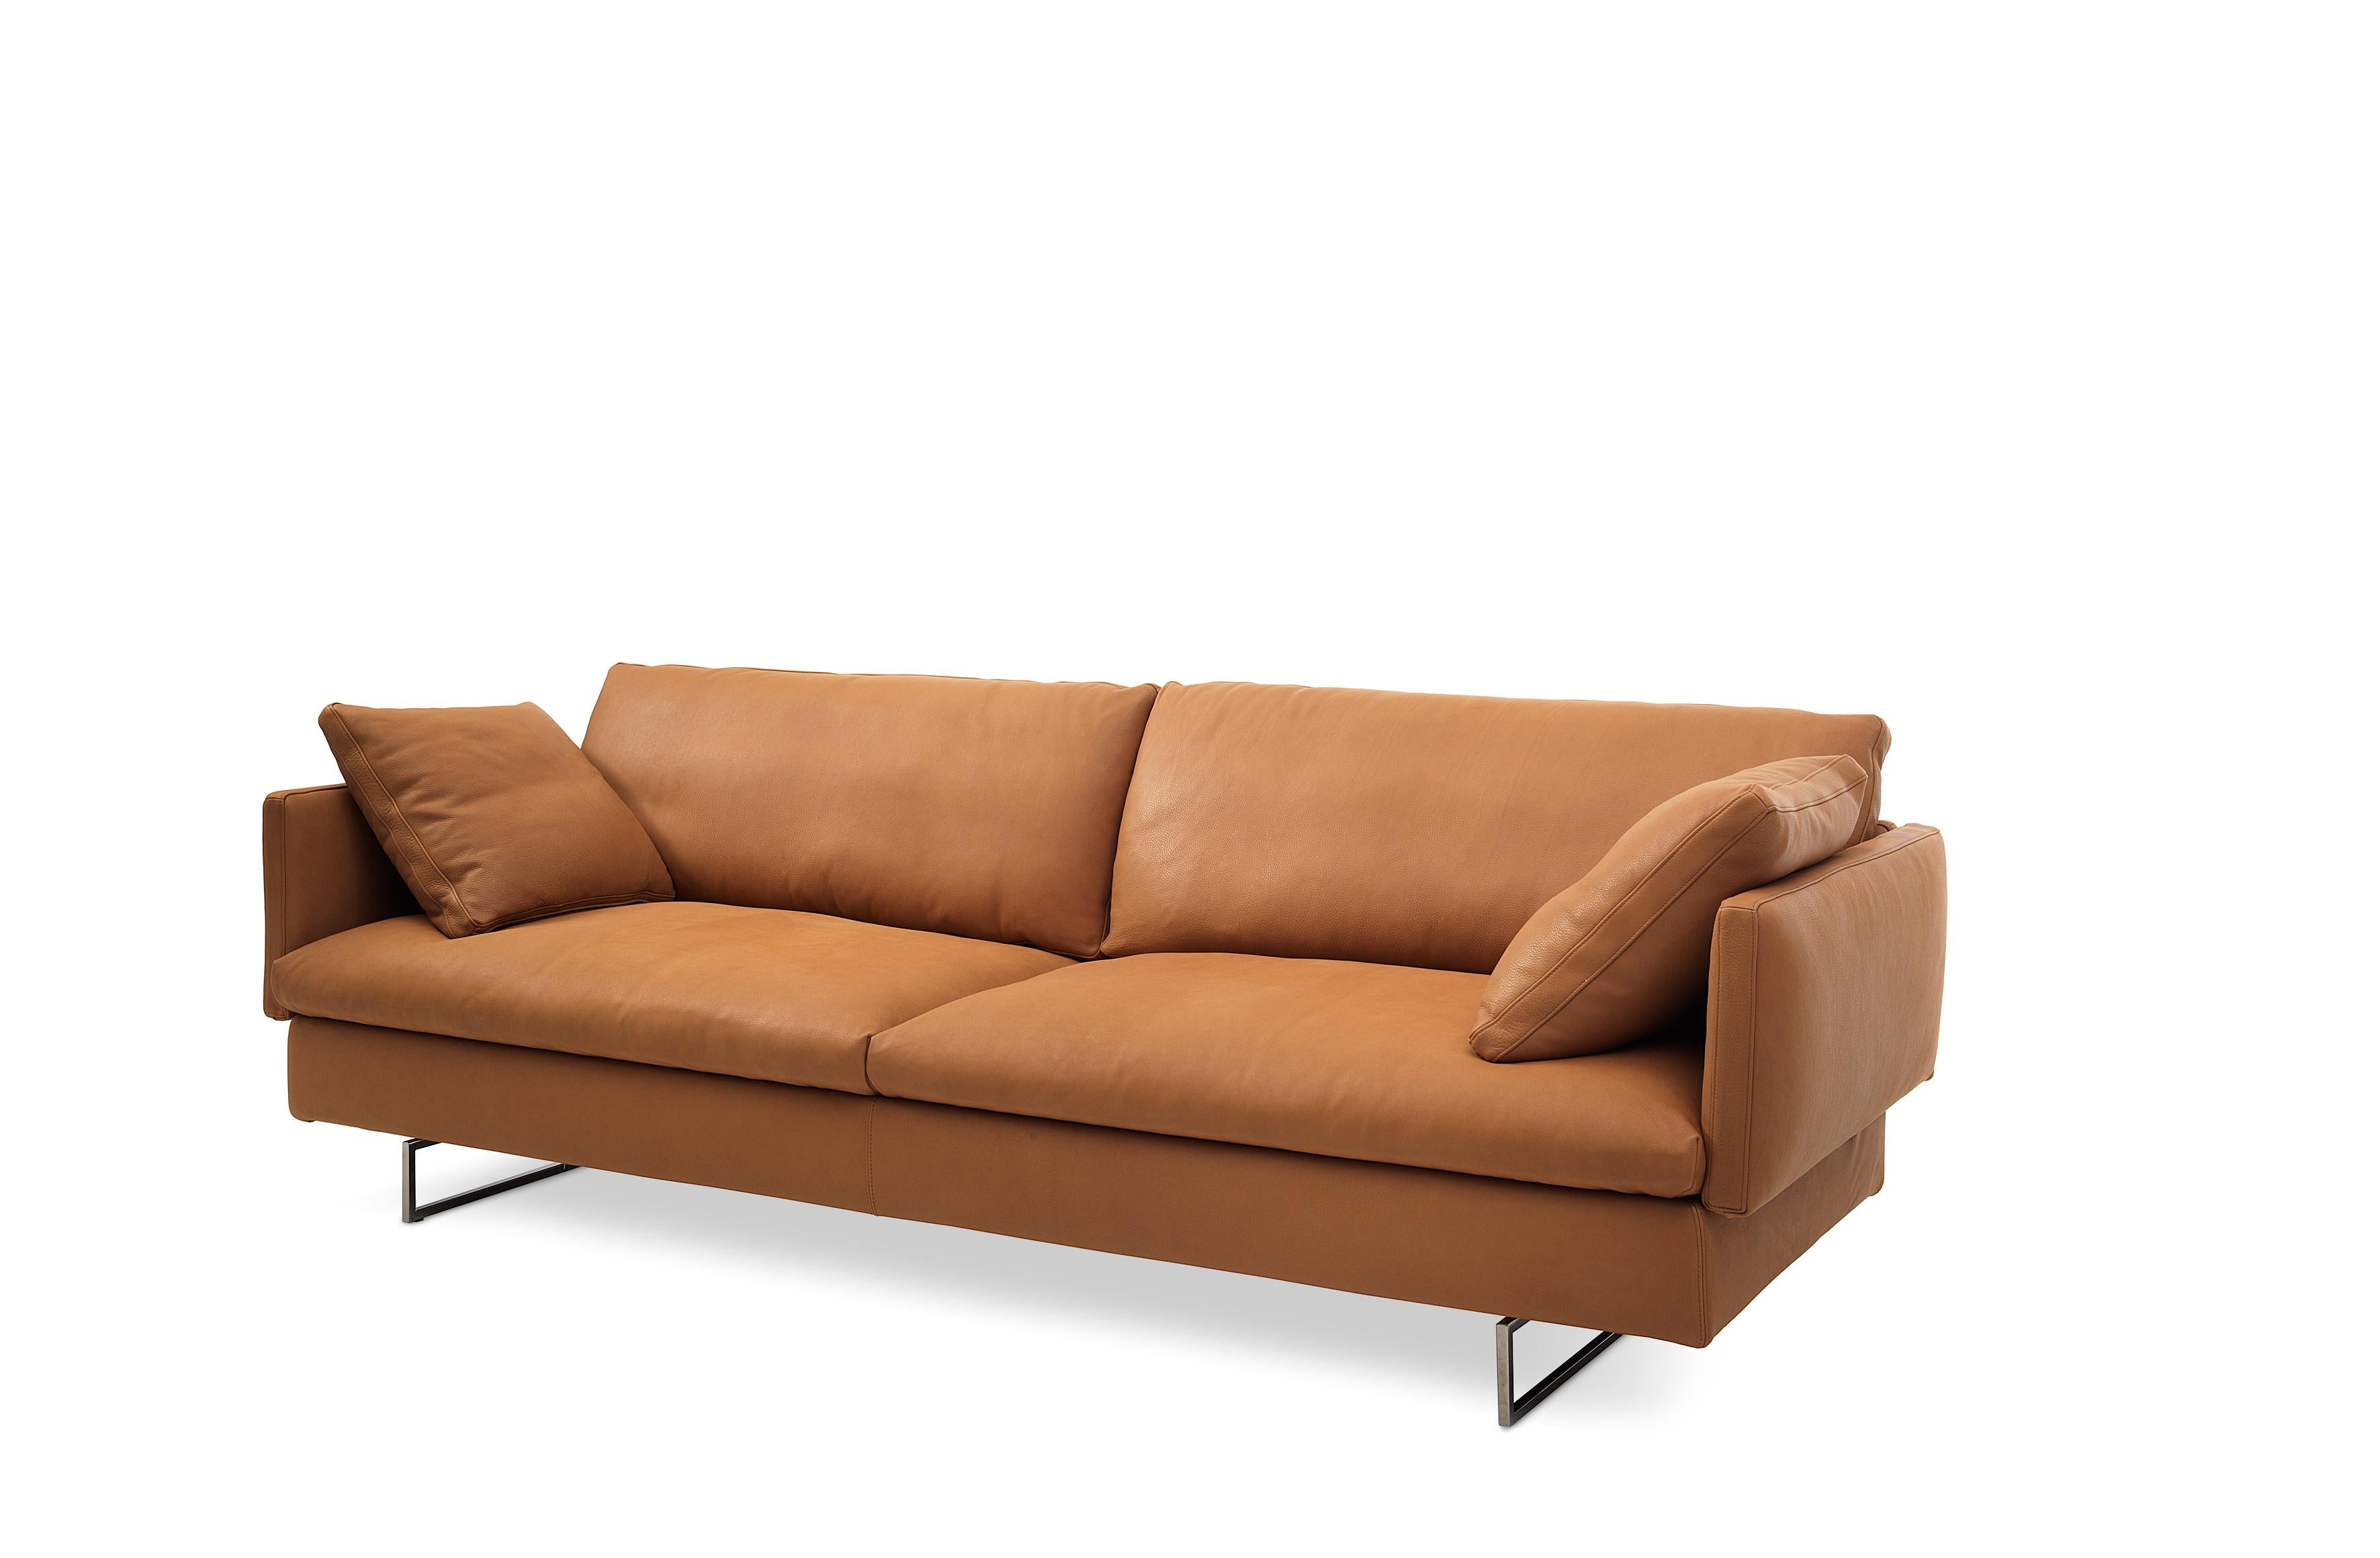 Dieses Sofa zeichnet sich durch klare Linien und ein einzigartiges, flexibles Design aus, das ein Gefühl von Schwung für eine größere Reise vermittelt. Die Polstervarianten sind essentiell und zeitgemäß, eklektisch und charaktervoll. Voyage kann